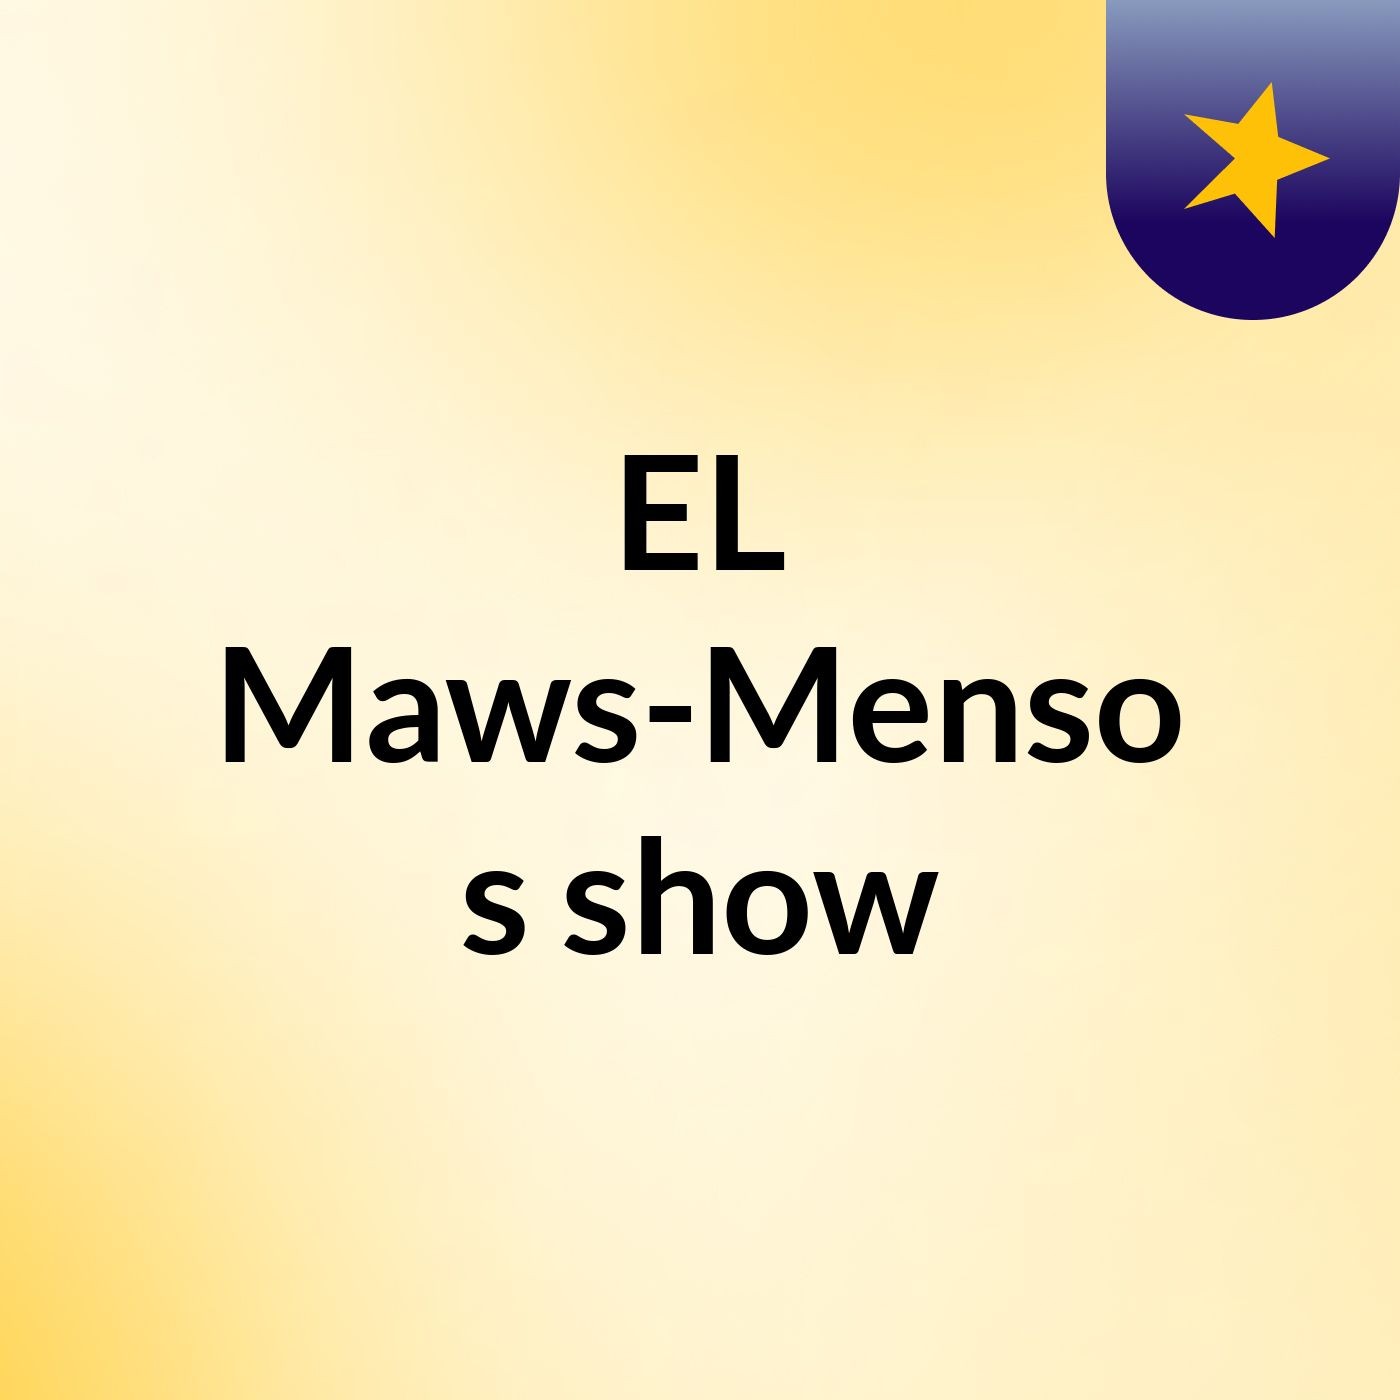 EL Maws-Menso's show